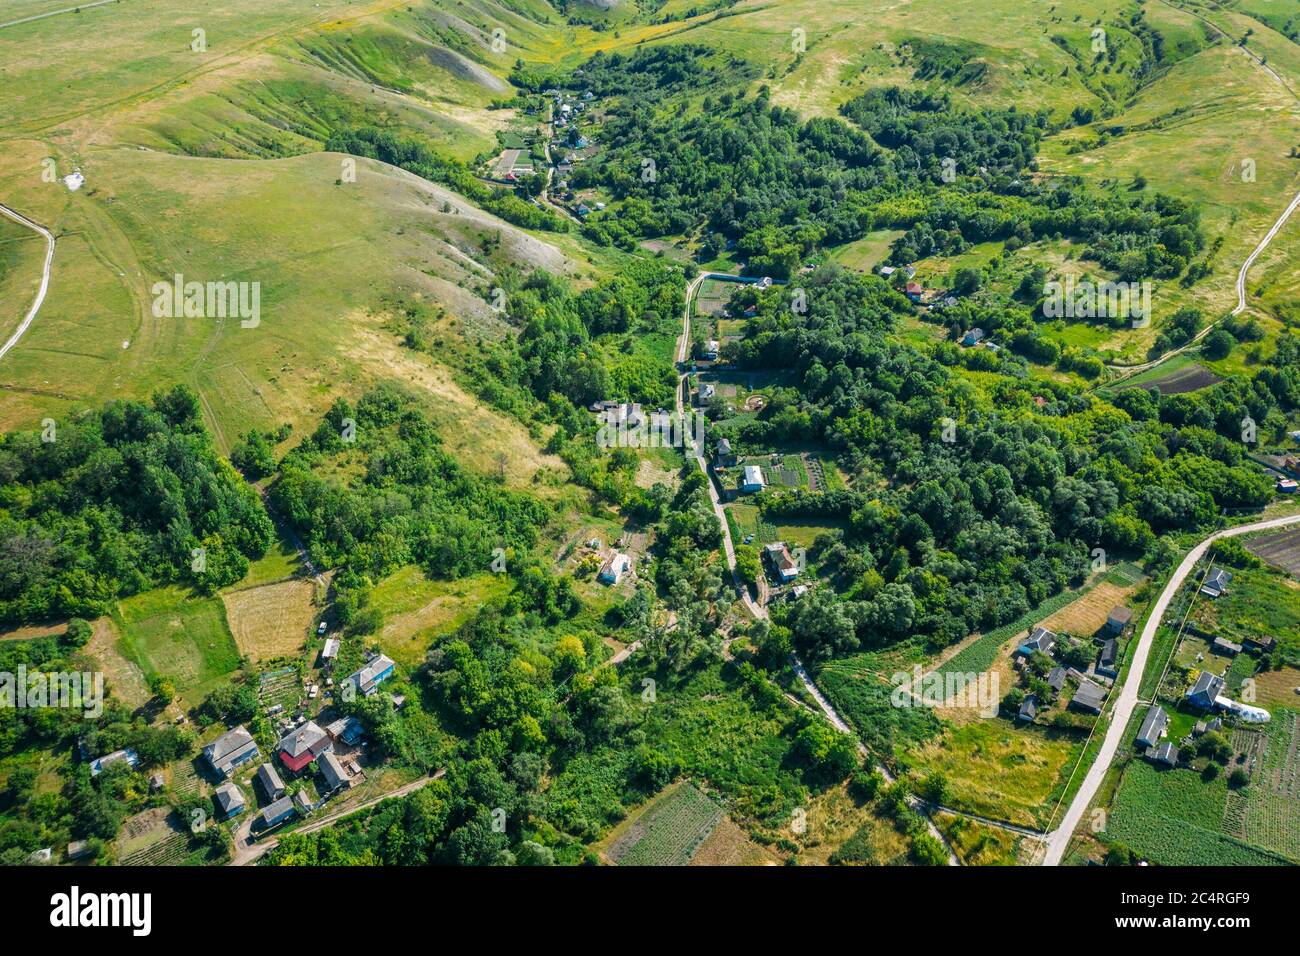 Village rural parmi les collines verdoyantes et les champs agricoles en campagne , vue aérienne de drone. Banque D'Images